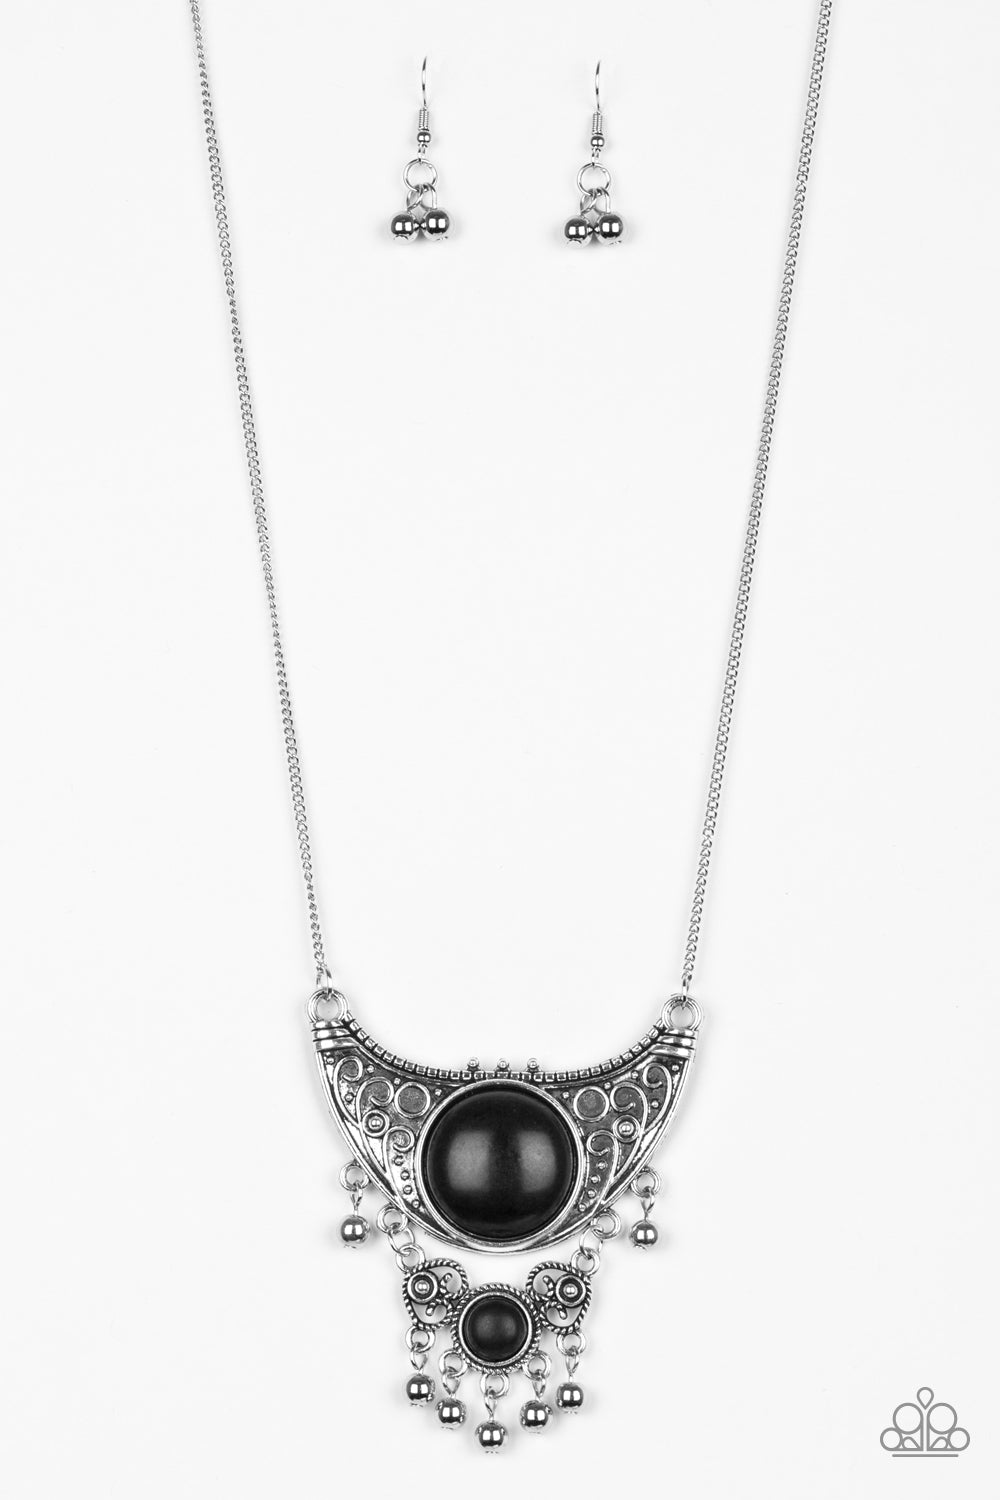 Paparazzi necklace - Summit Style - Black